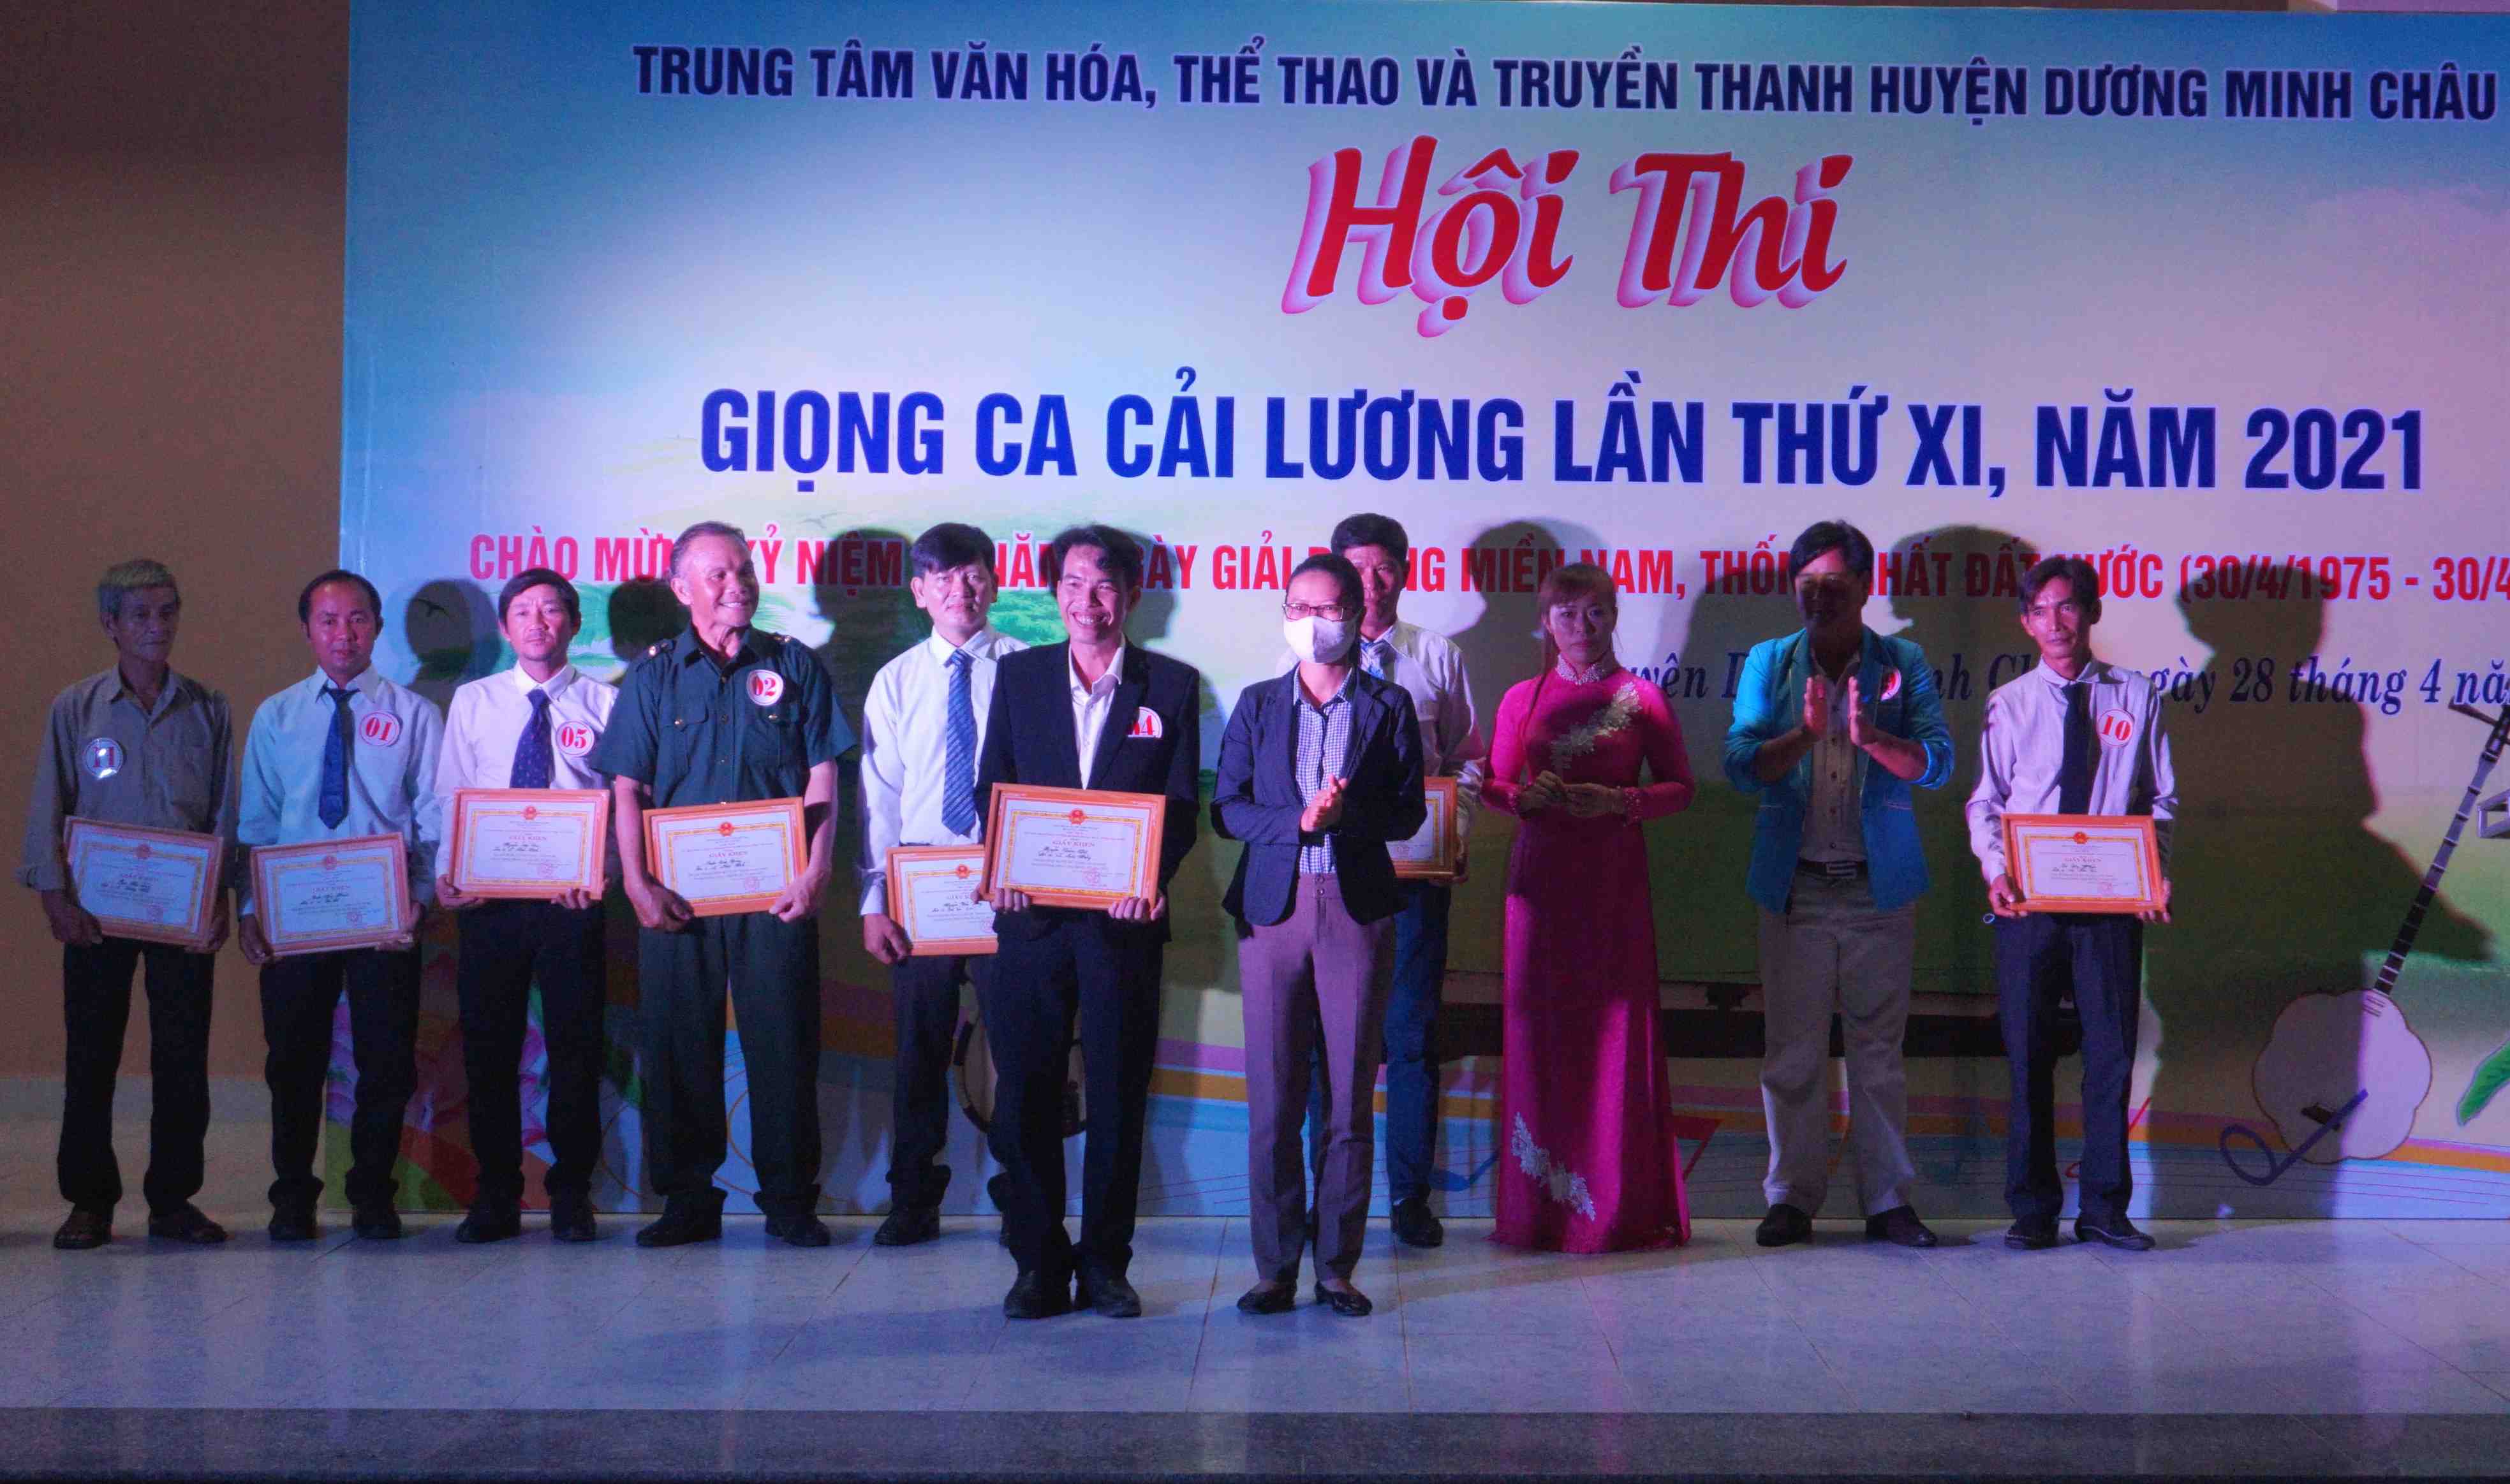 Huyện Dương Minh Châu Tổ chức Hội thi Giọng ca cải lương lần thứ XI năm 2021